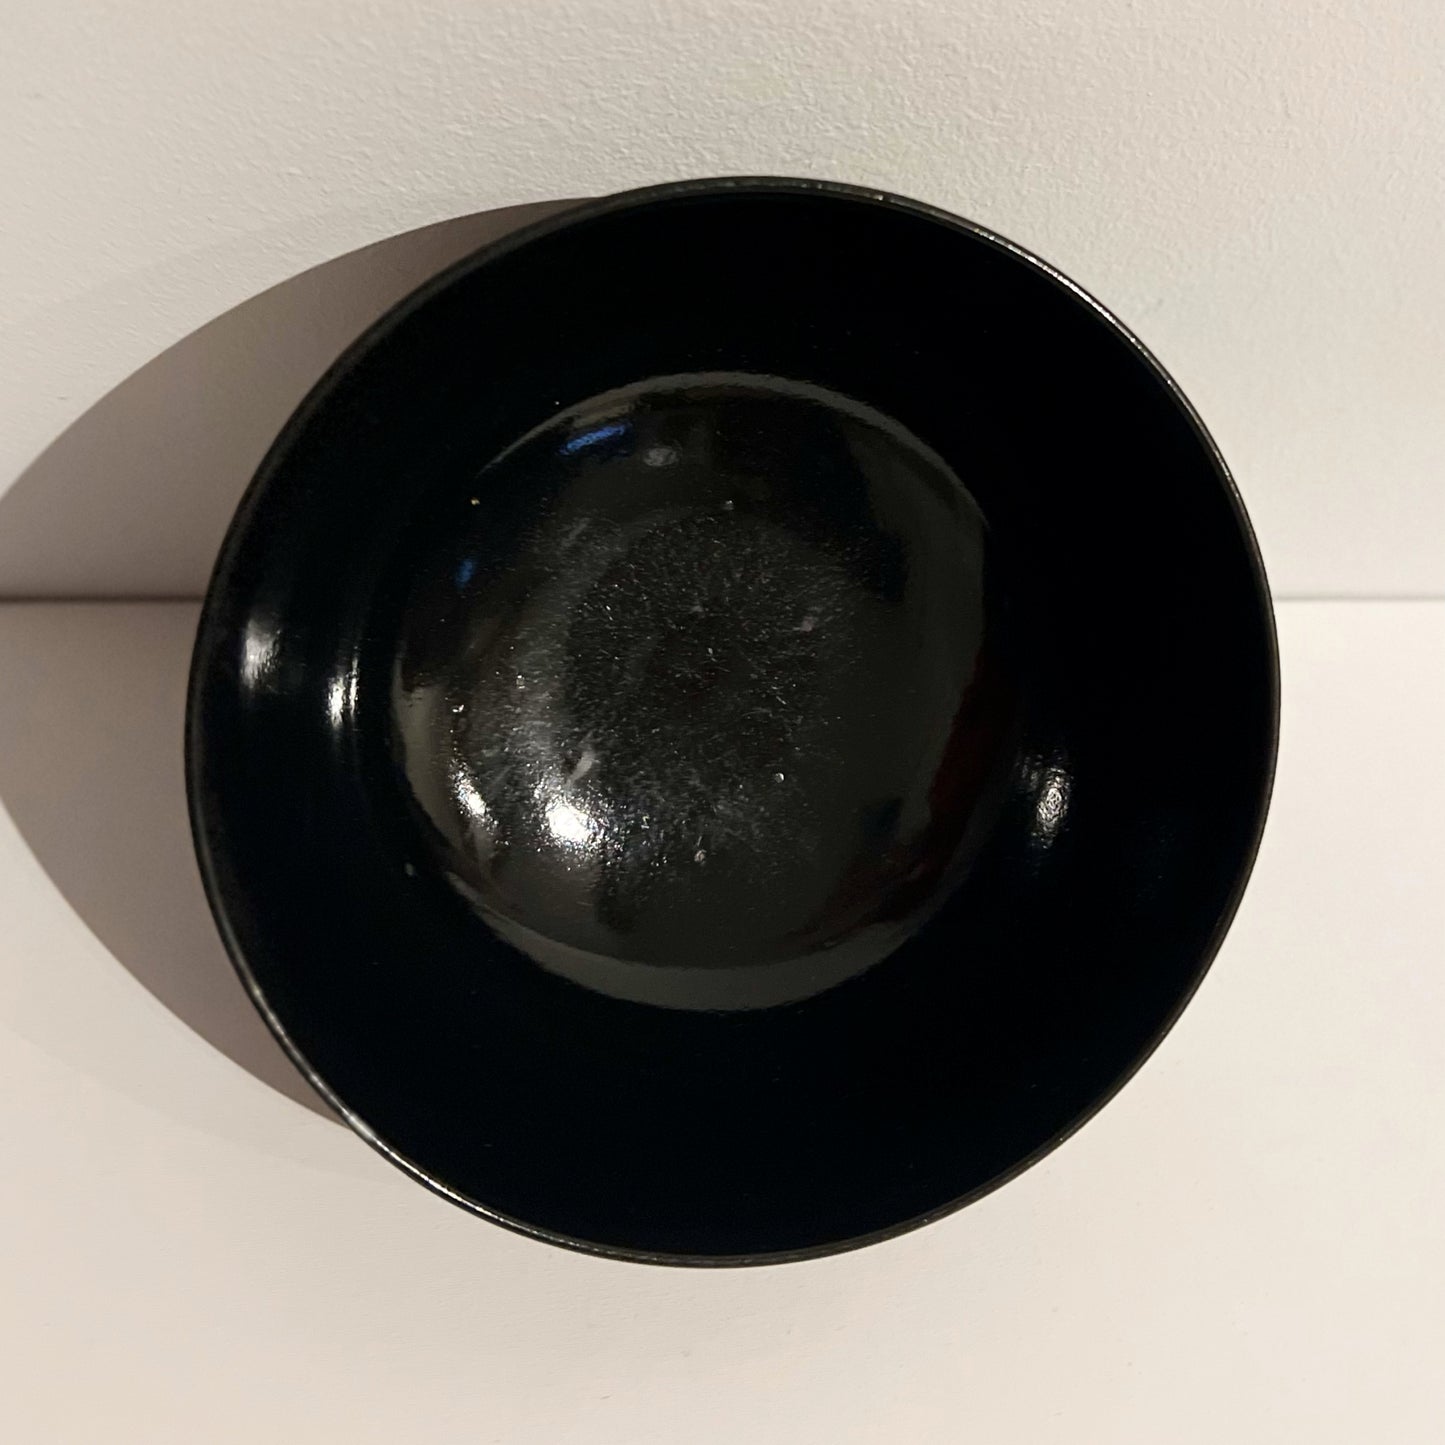 【Antique】UK - 1800-30s Wedgwood Black Pottery Bowl